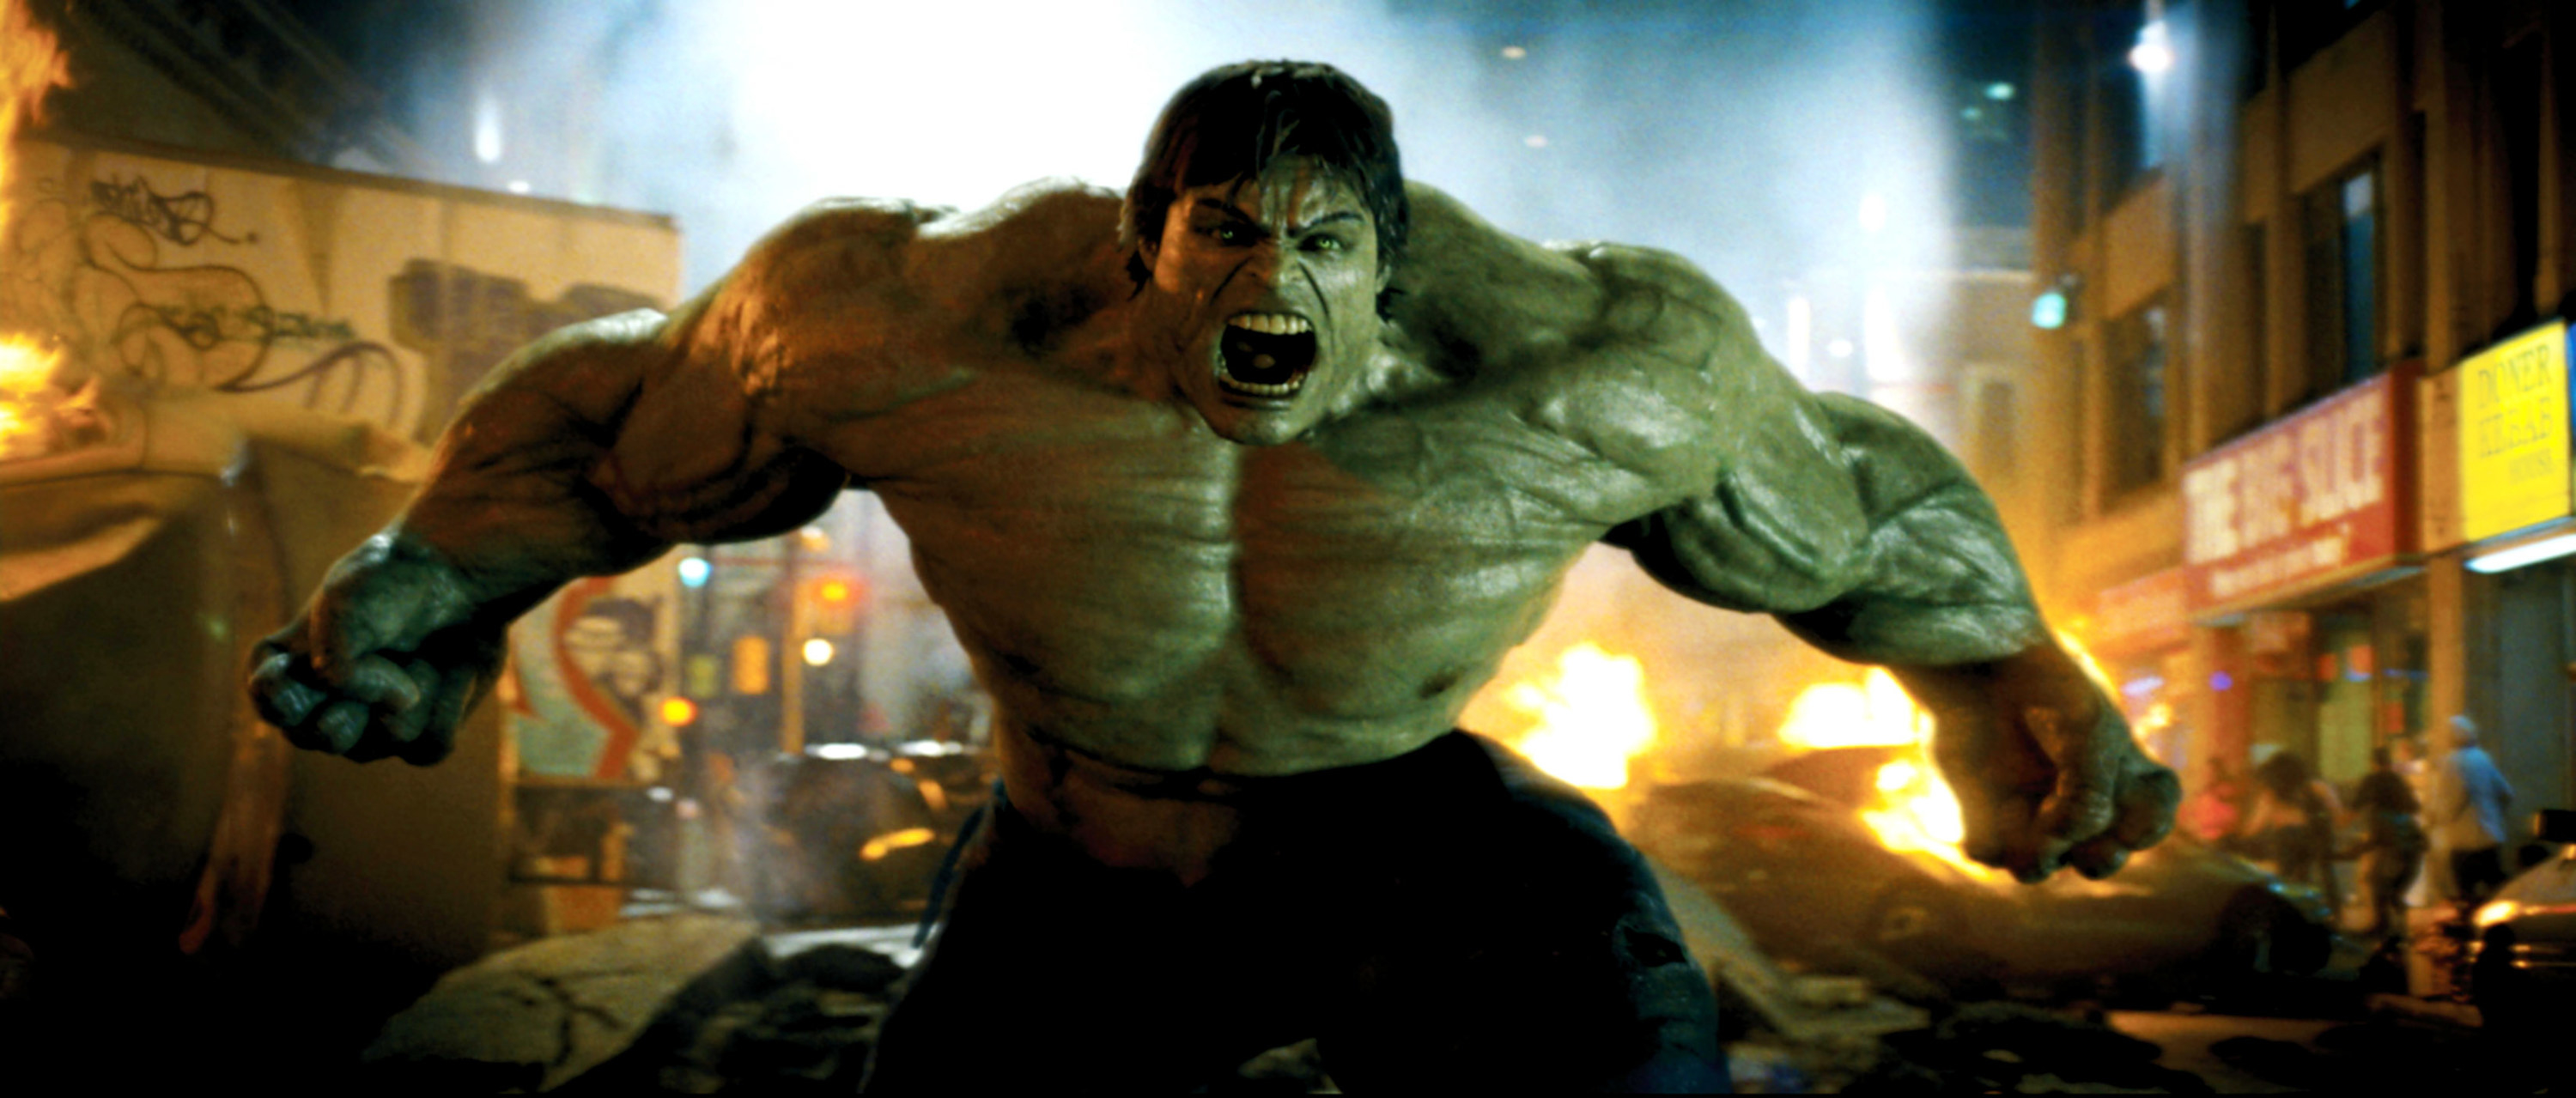 The Incredible Hulk in 2008